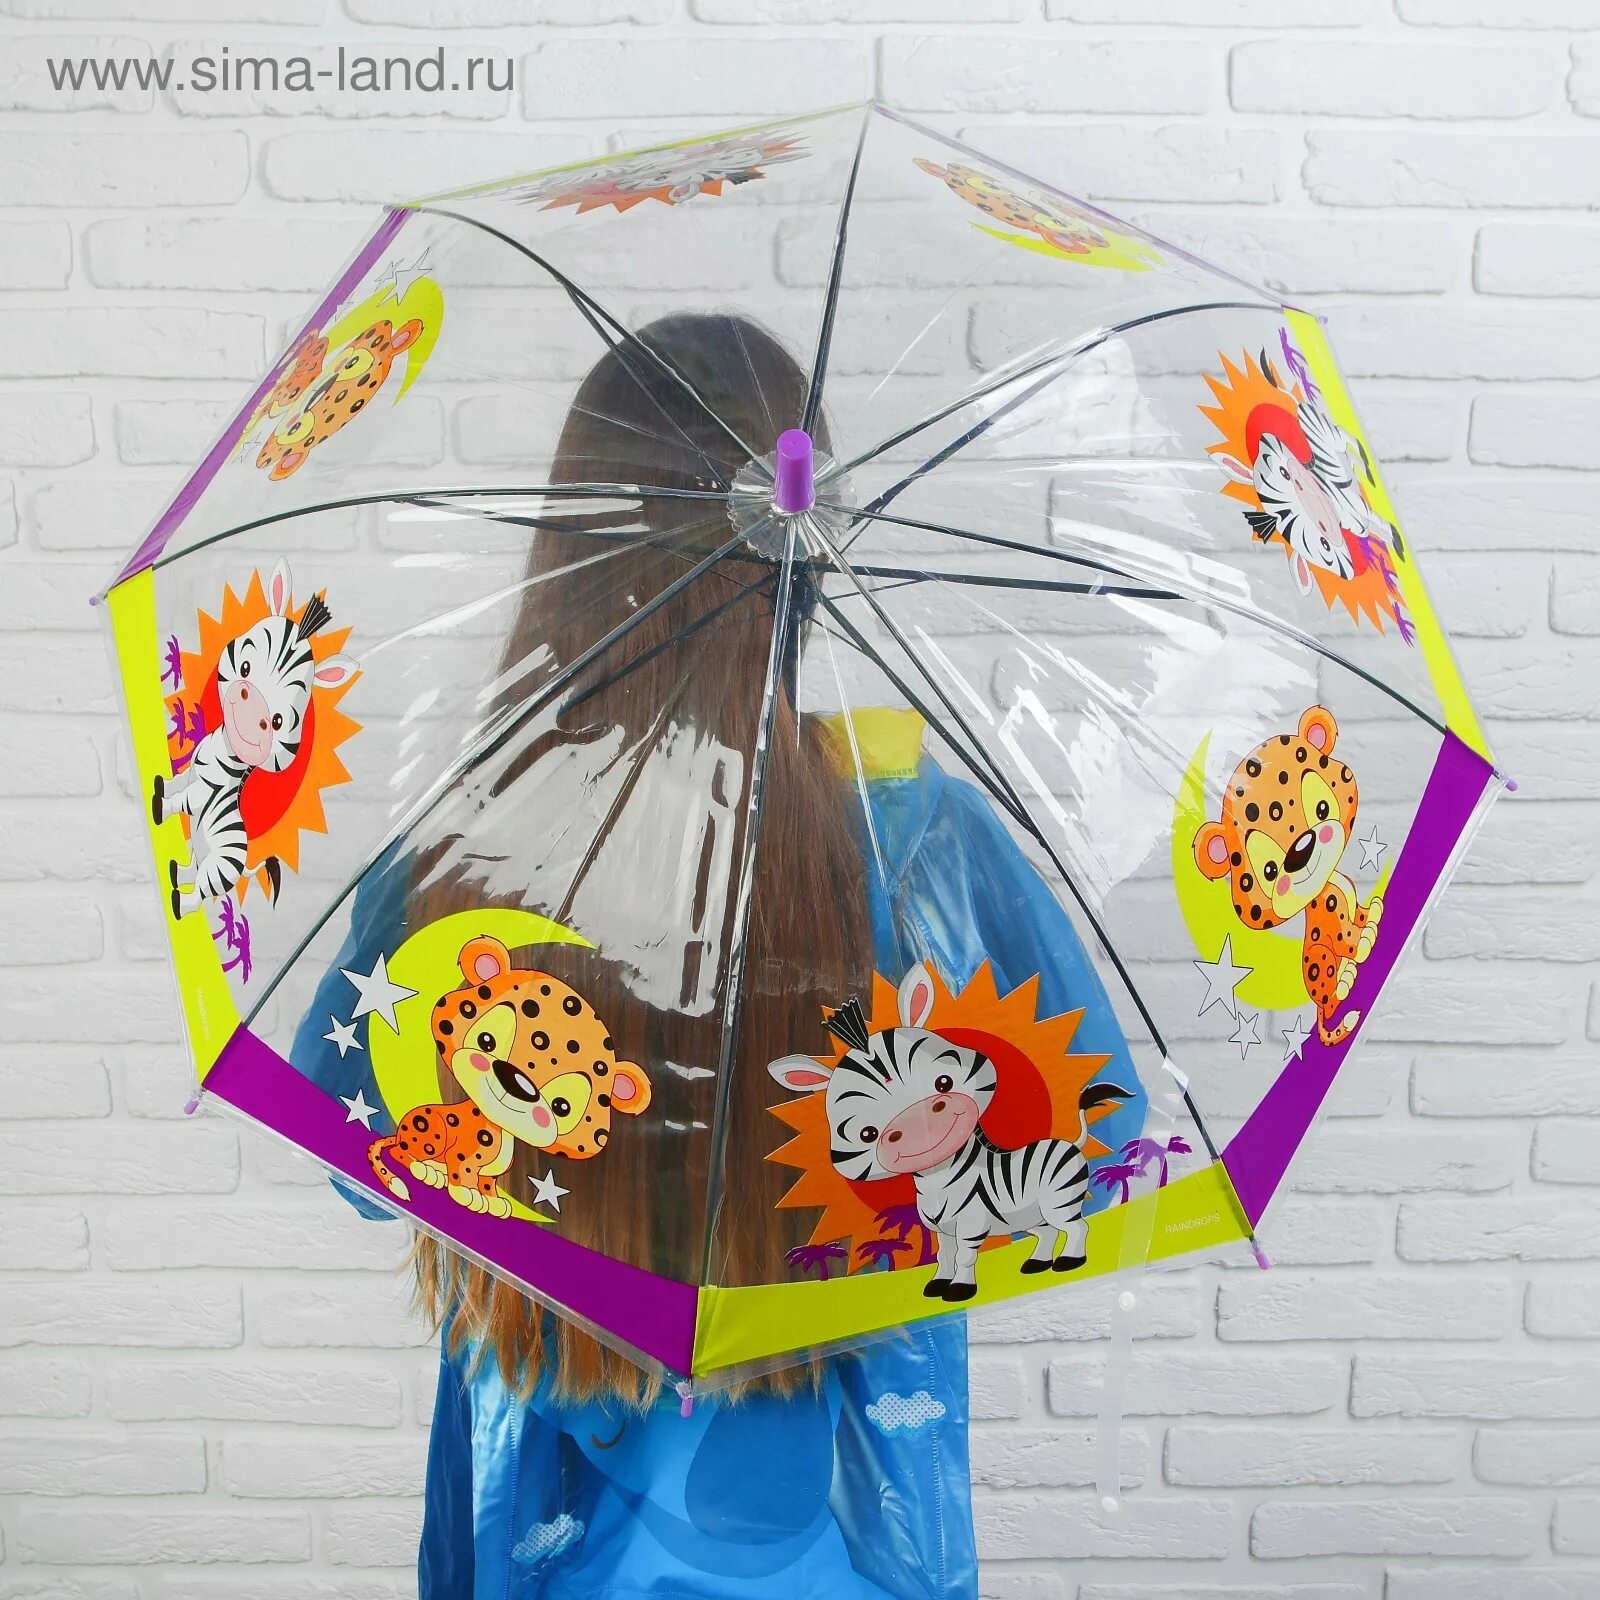 Детские зонты. Зонтик для детей. Зонтик детский для 2 лет. Малыш с зонтиком. Персонажа зонтика